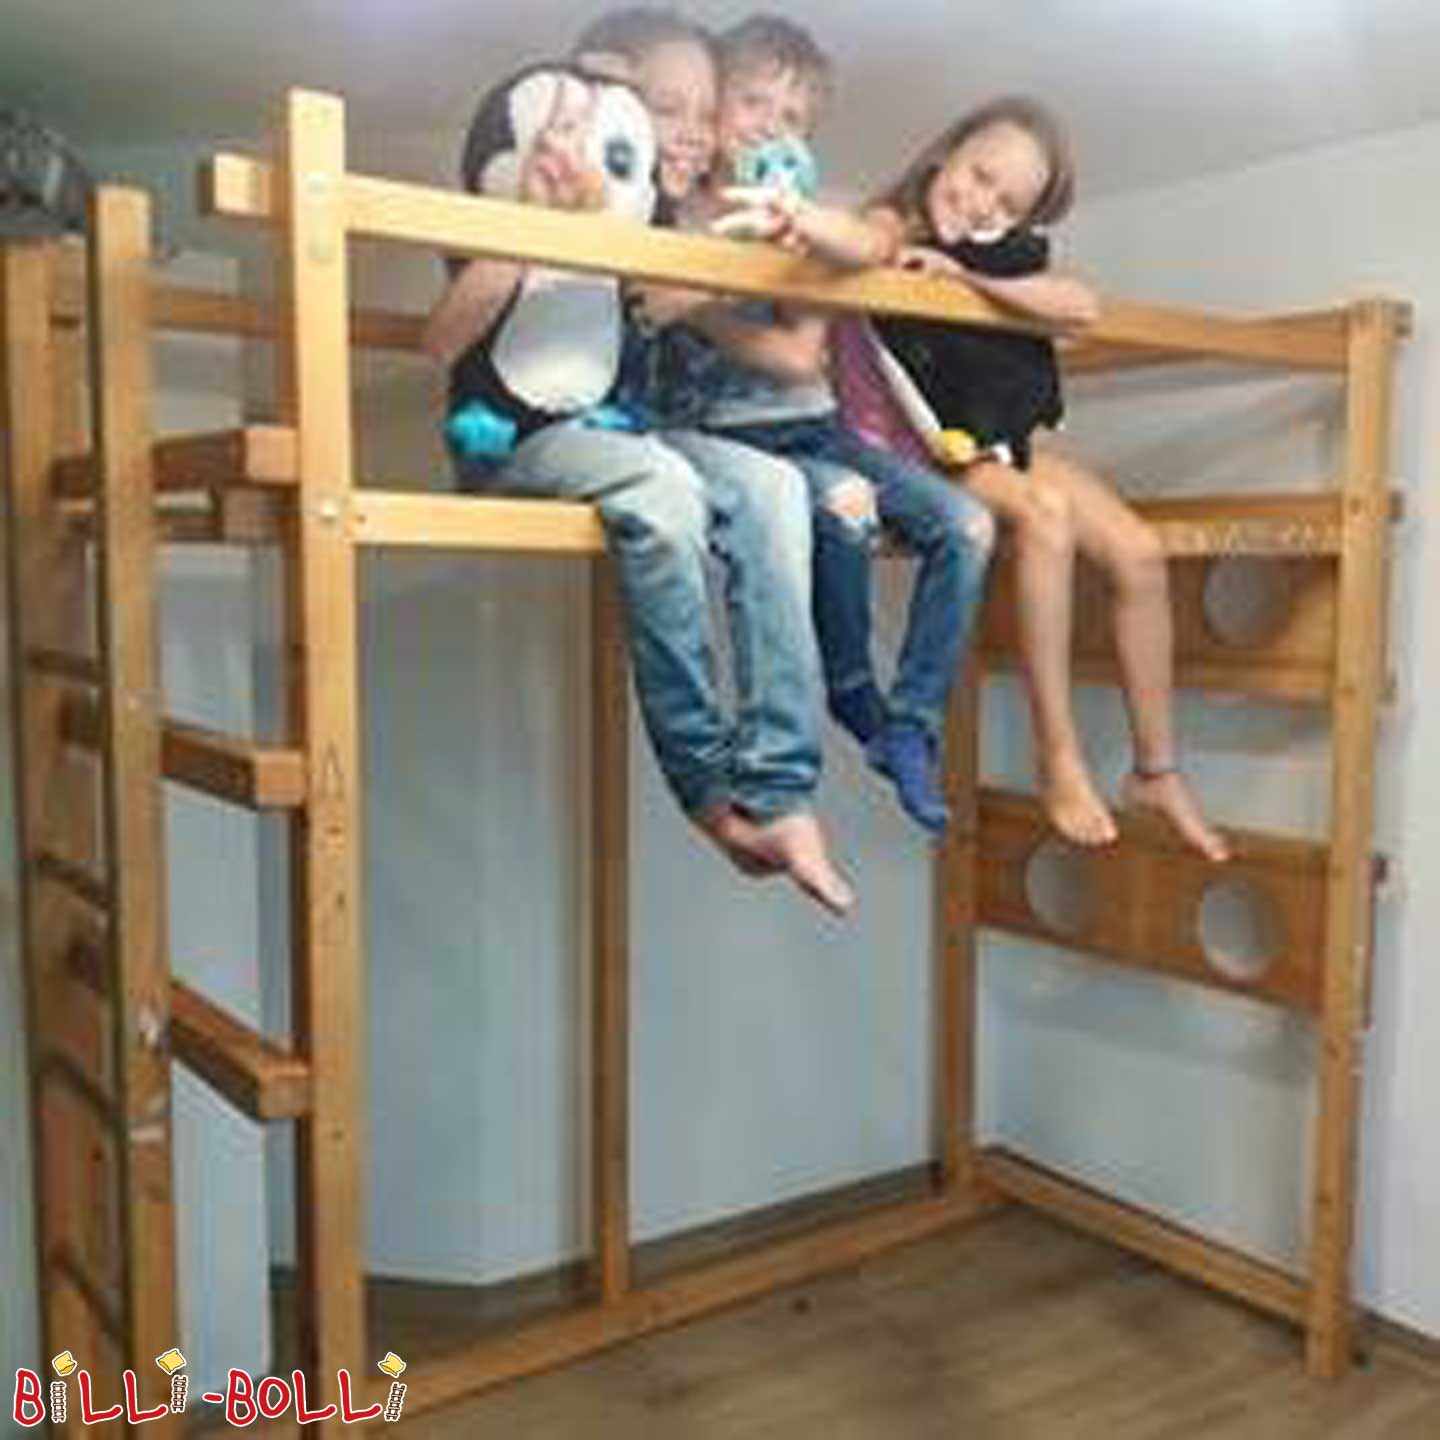 Palėpės lova, kuri auga kartu su vaiku (Kategorija: Naudojama palėpės lova)